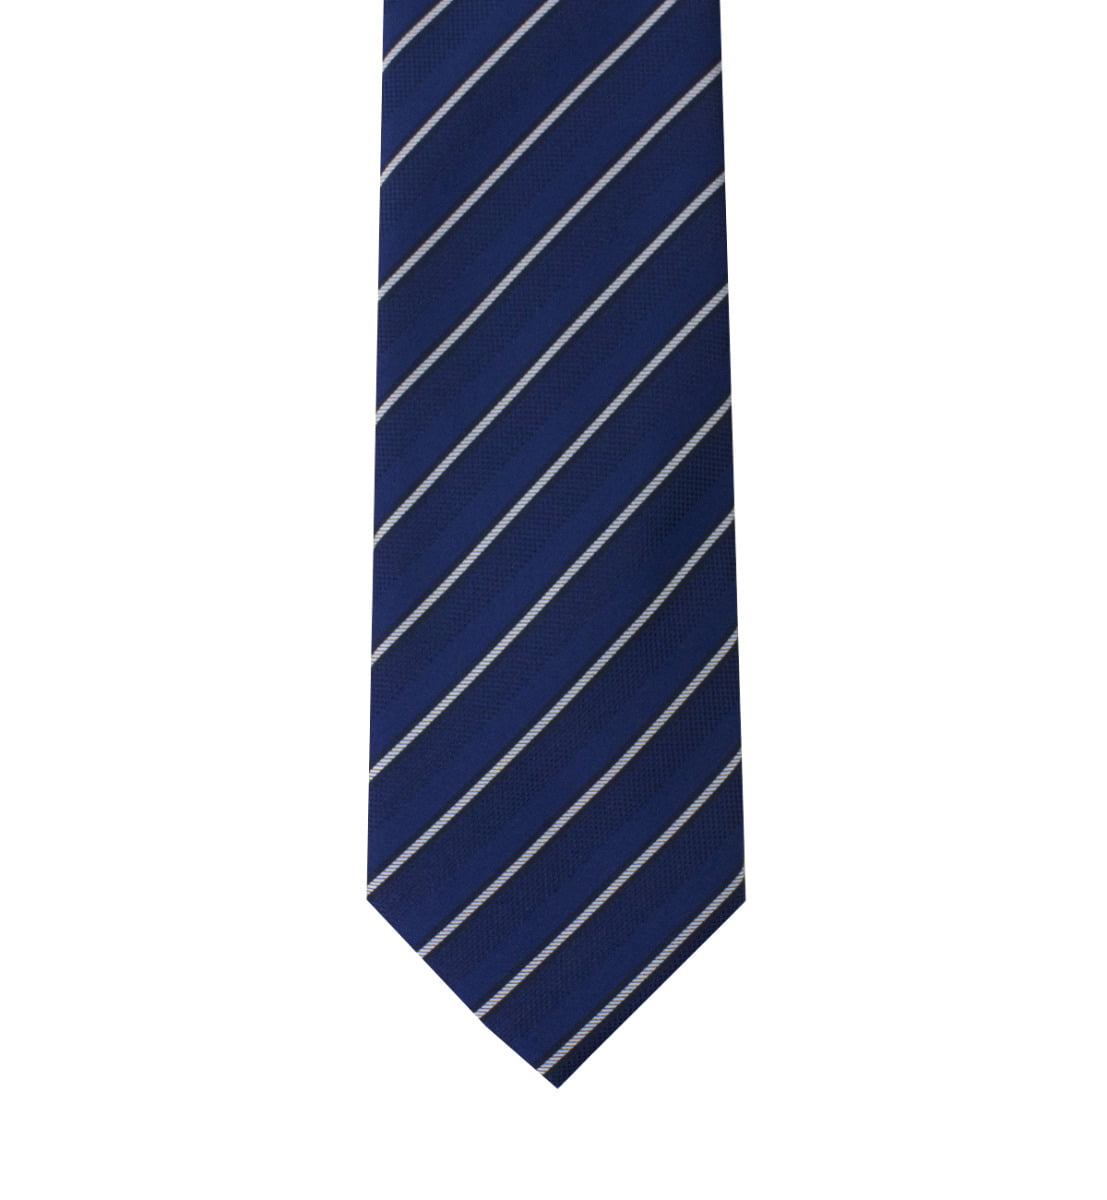 Cravatta uomo bluette righe diagonali bianche 8cm di larghezza made in italy